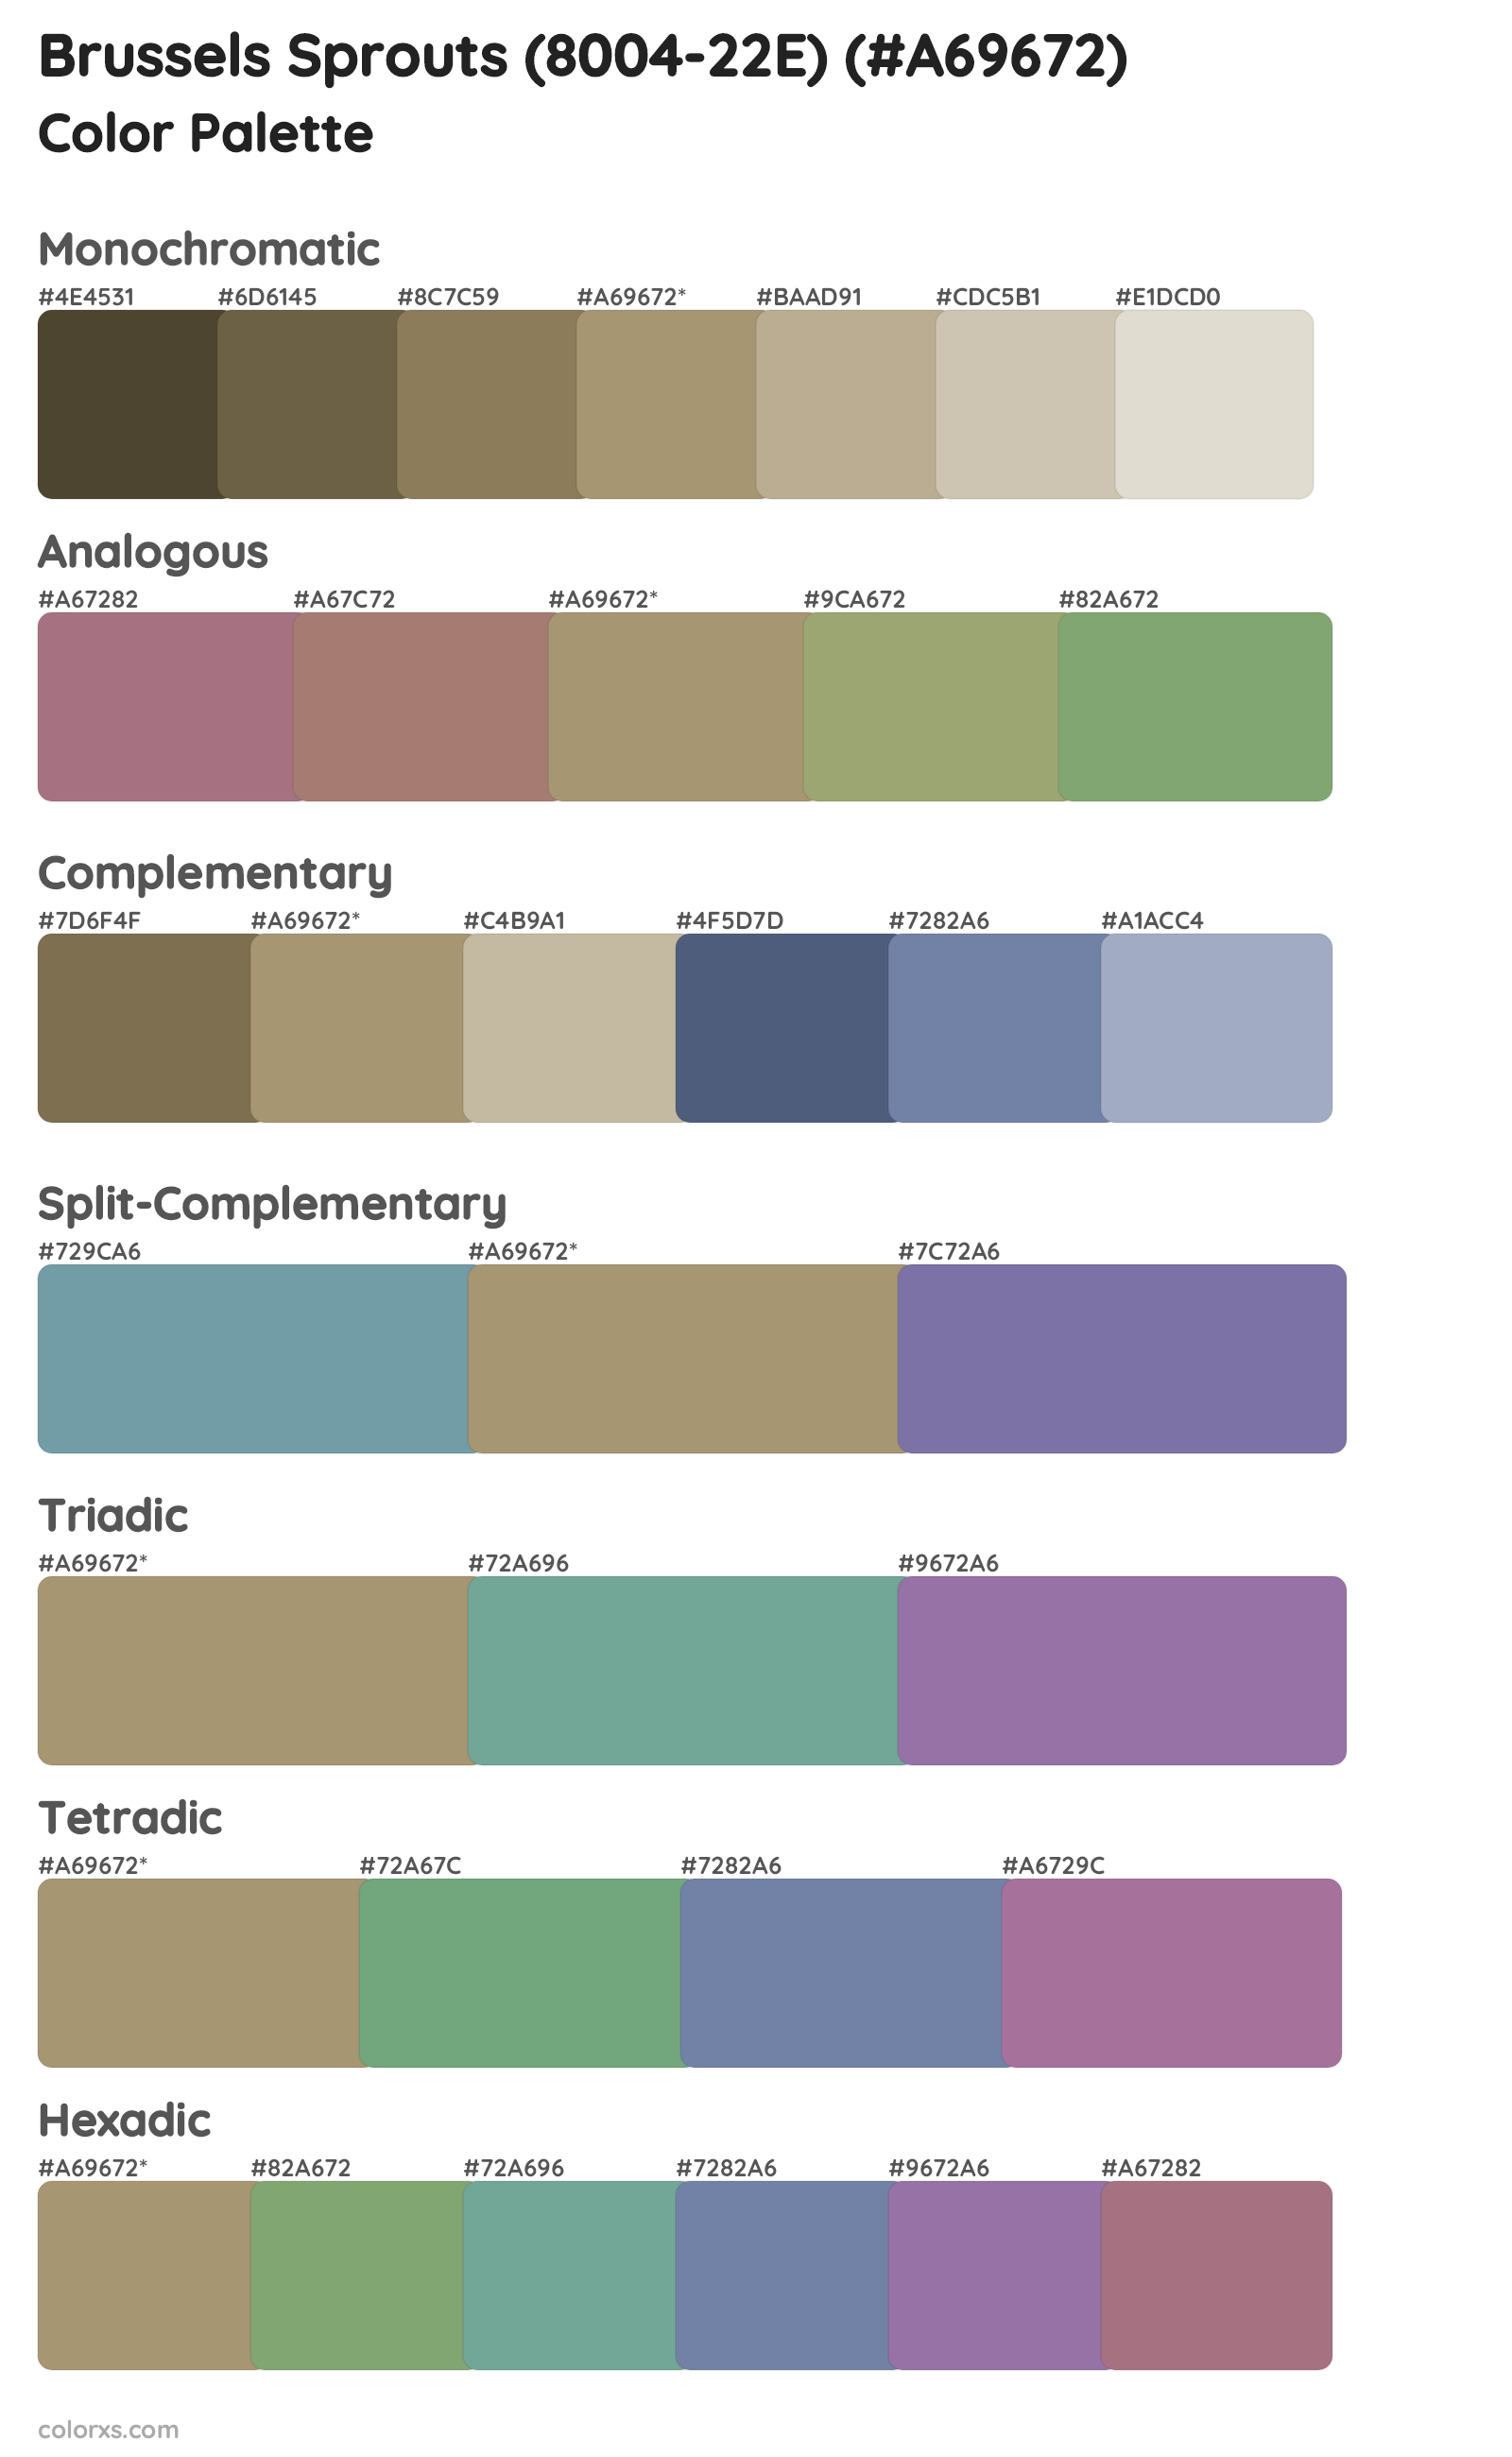 Brussels Sprouts (8004-22E) Color Scheme Palettes